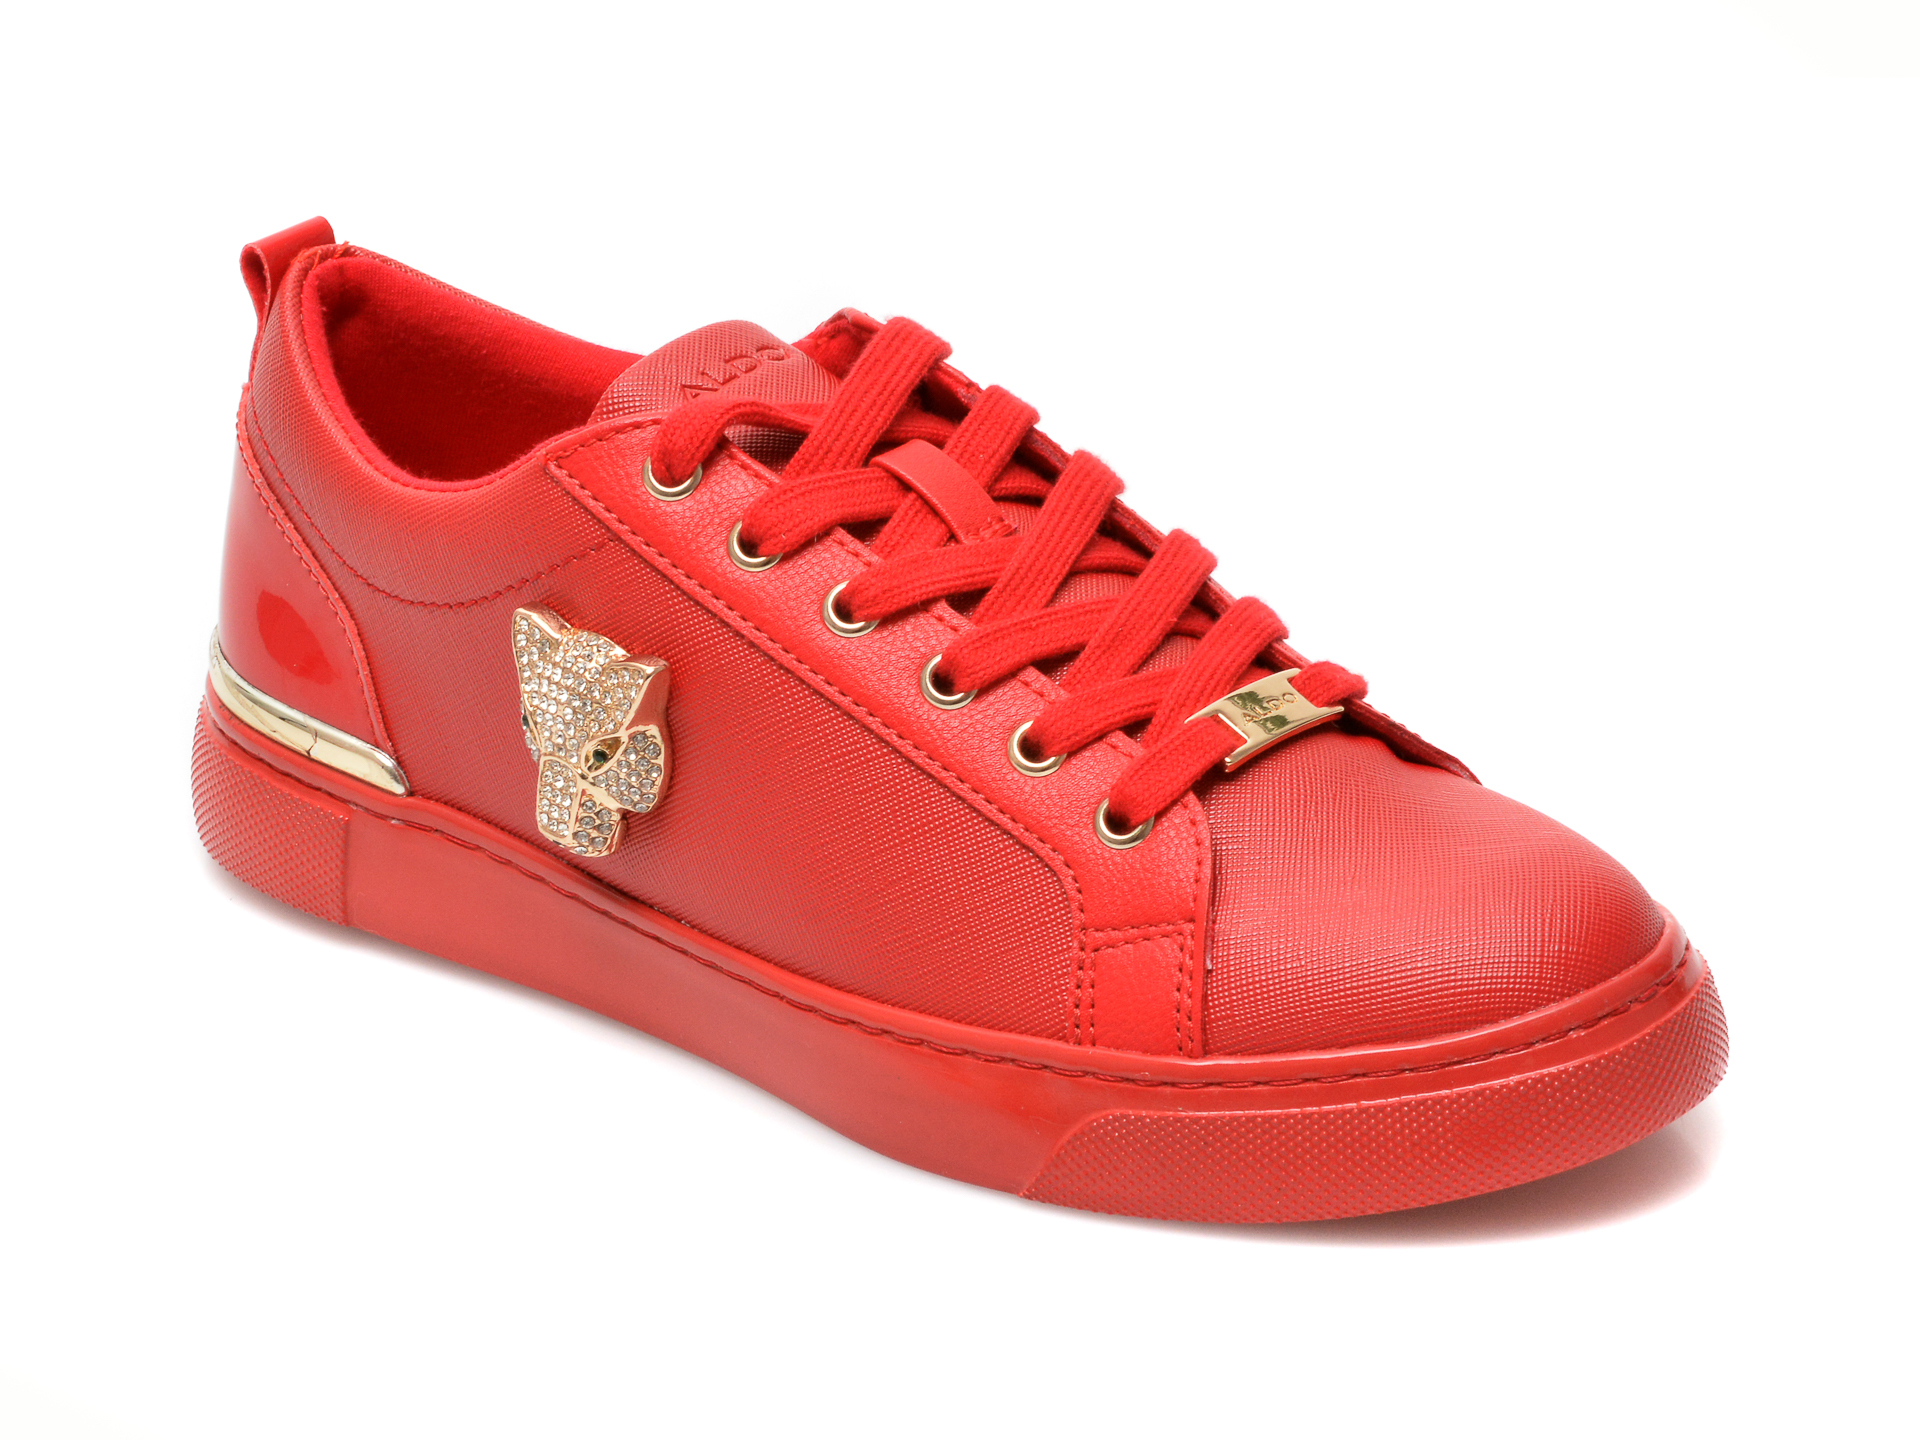 Pantofi ALDO rosii, FRAYLDAN600, din piele ecologica Aldo